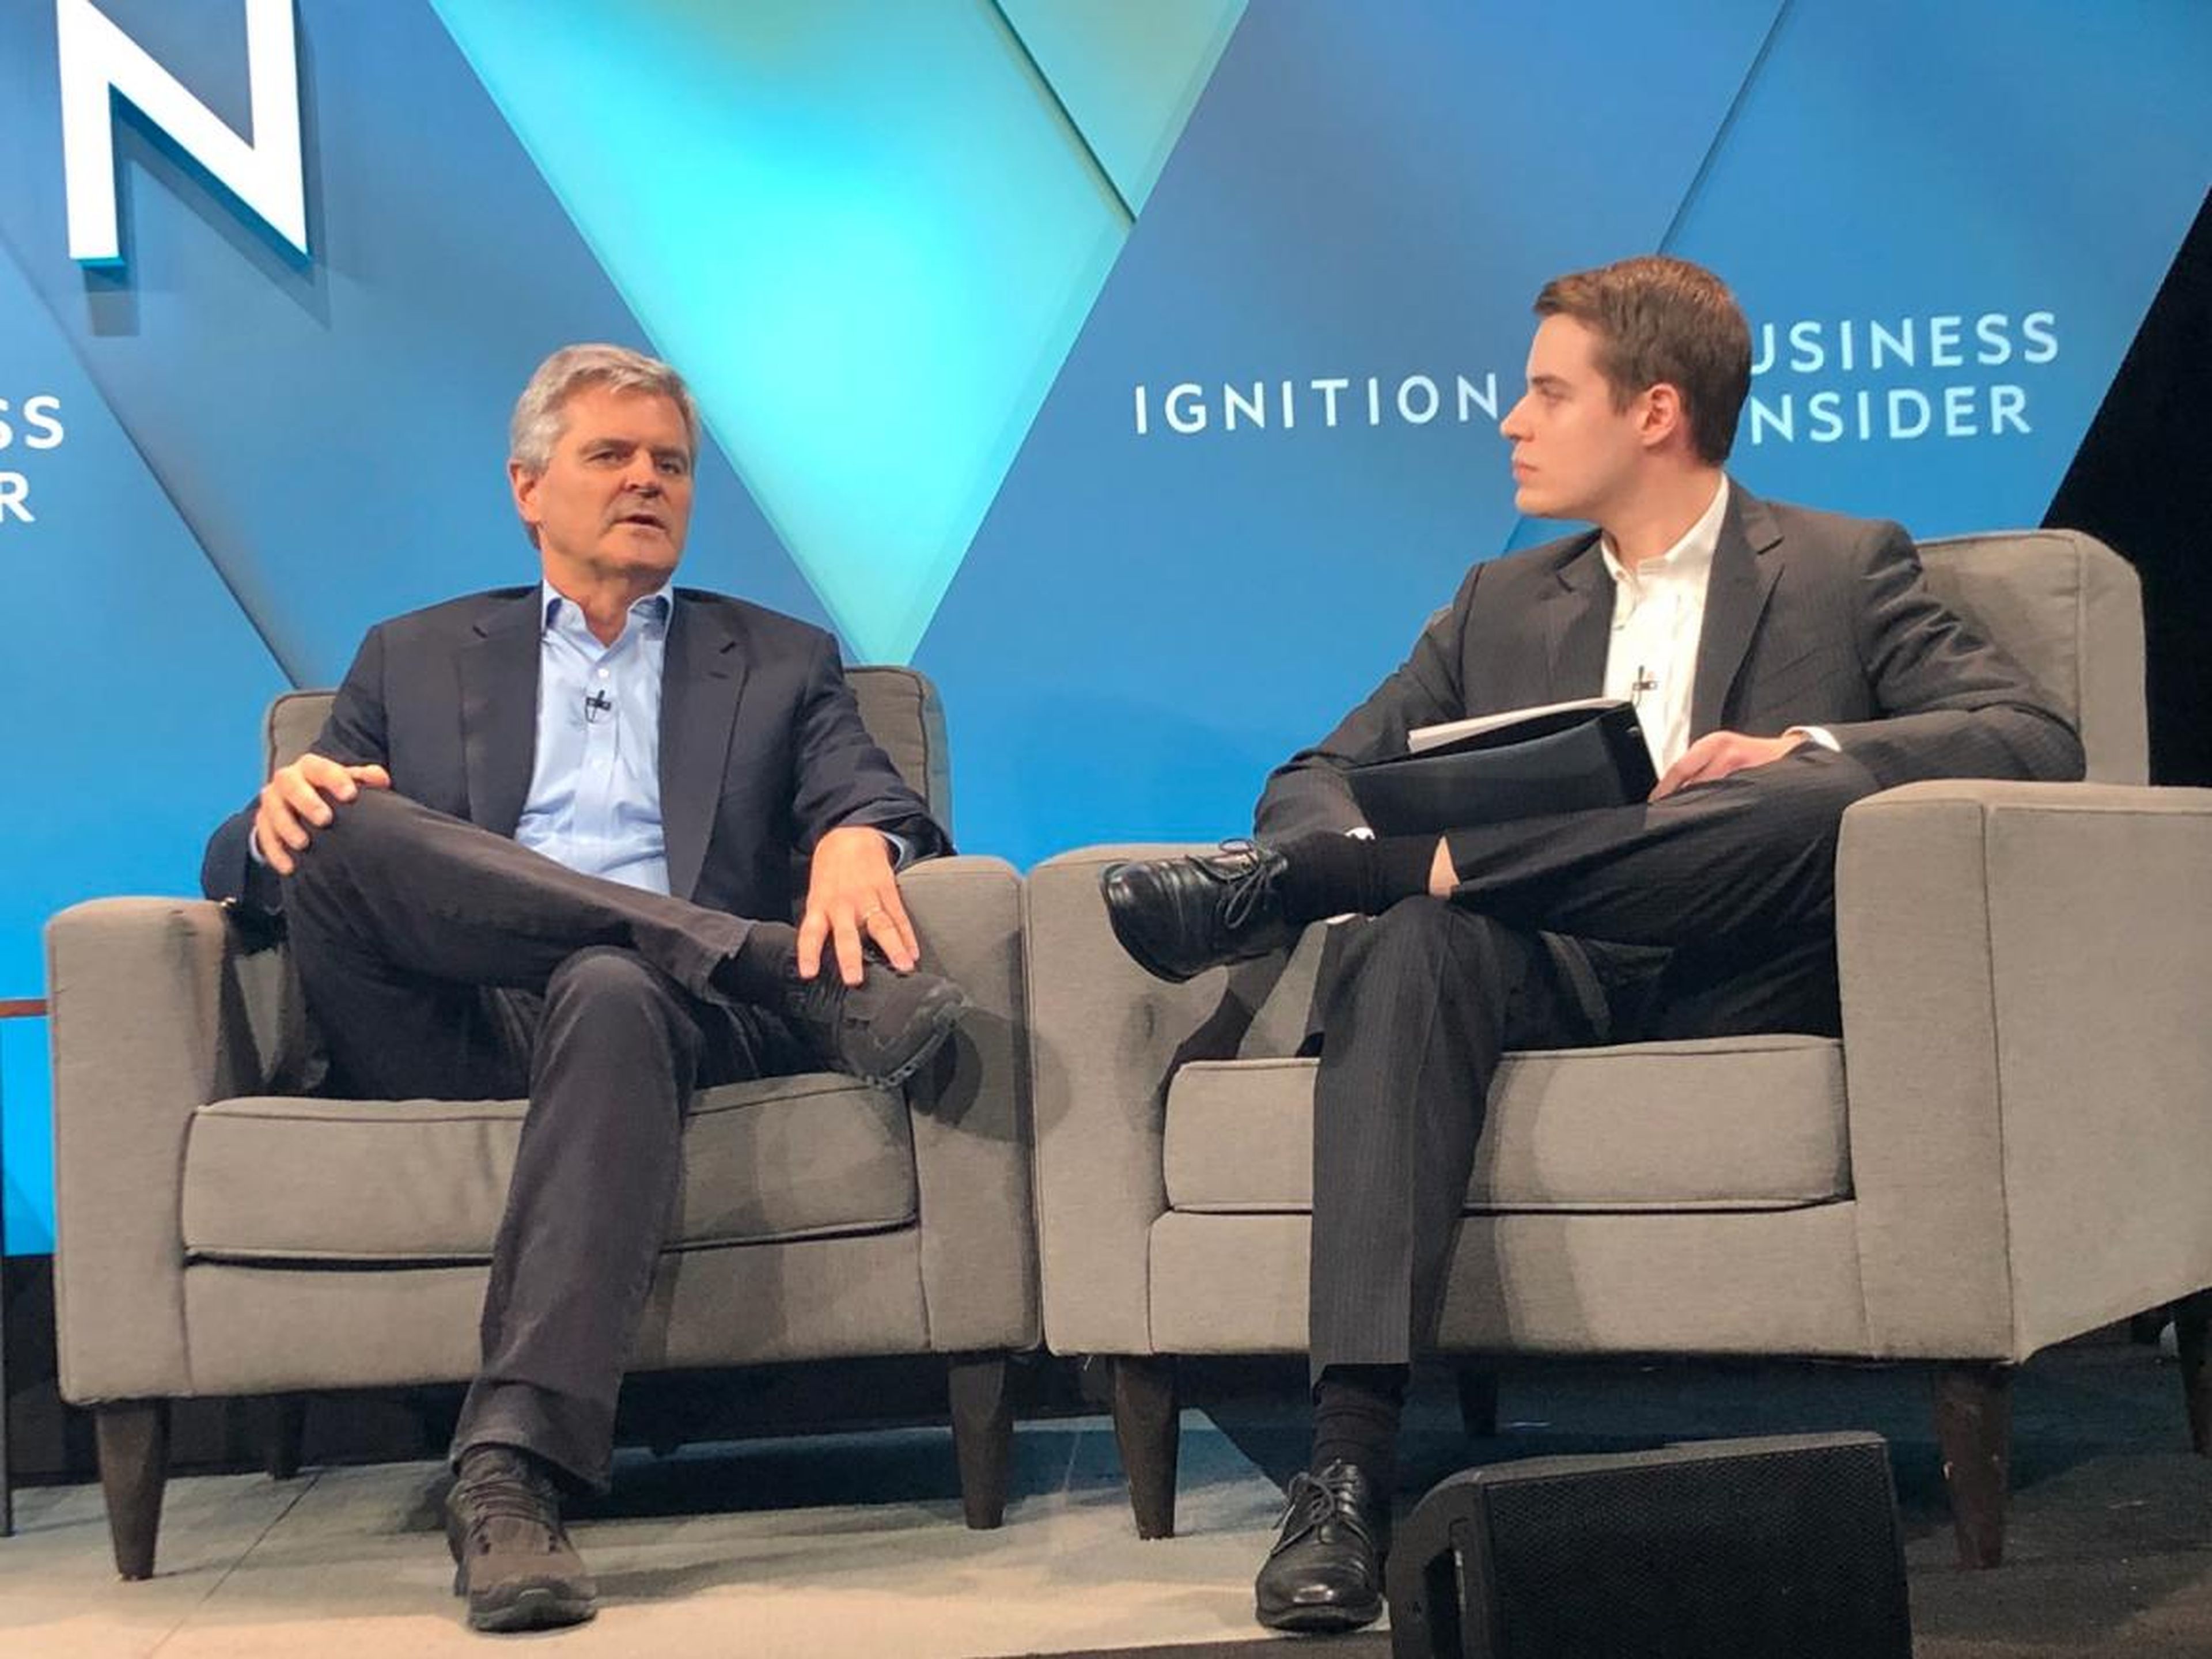 Entrevisté al cofundador de AOL, Steve Case, a la izquierda, acerca de su iniciativa "Rise of the Rest" en la conferencia Business Insider Ignition de este año.